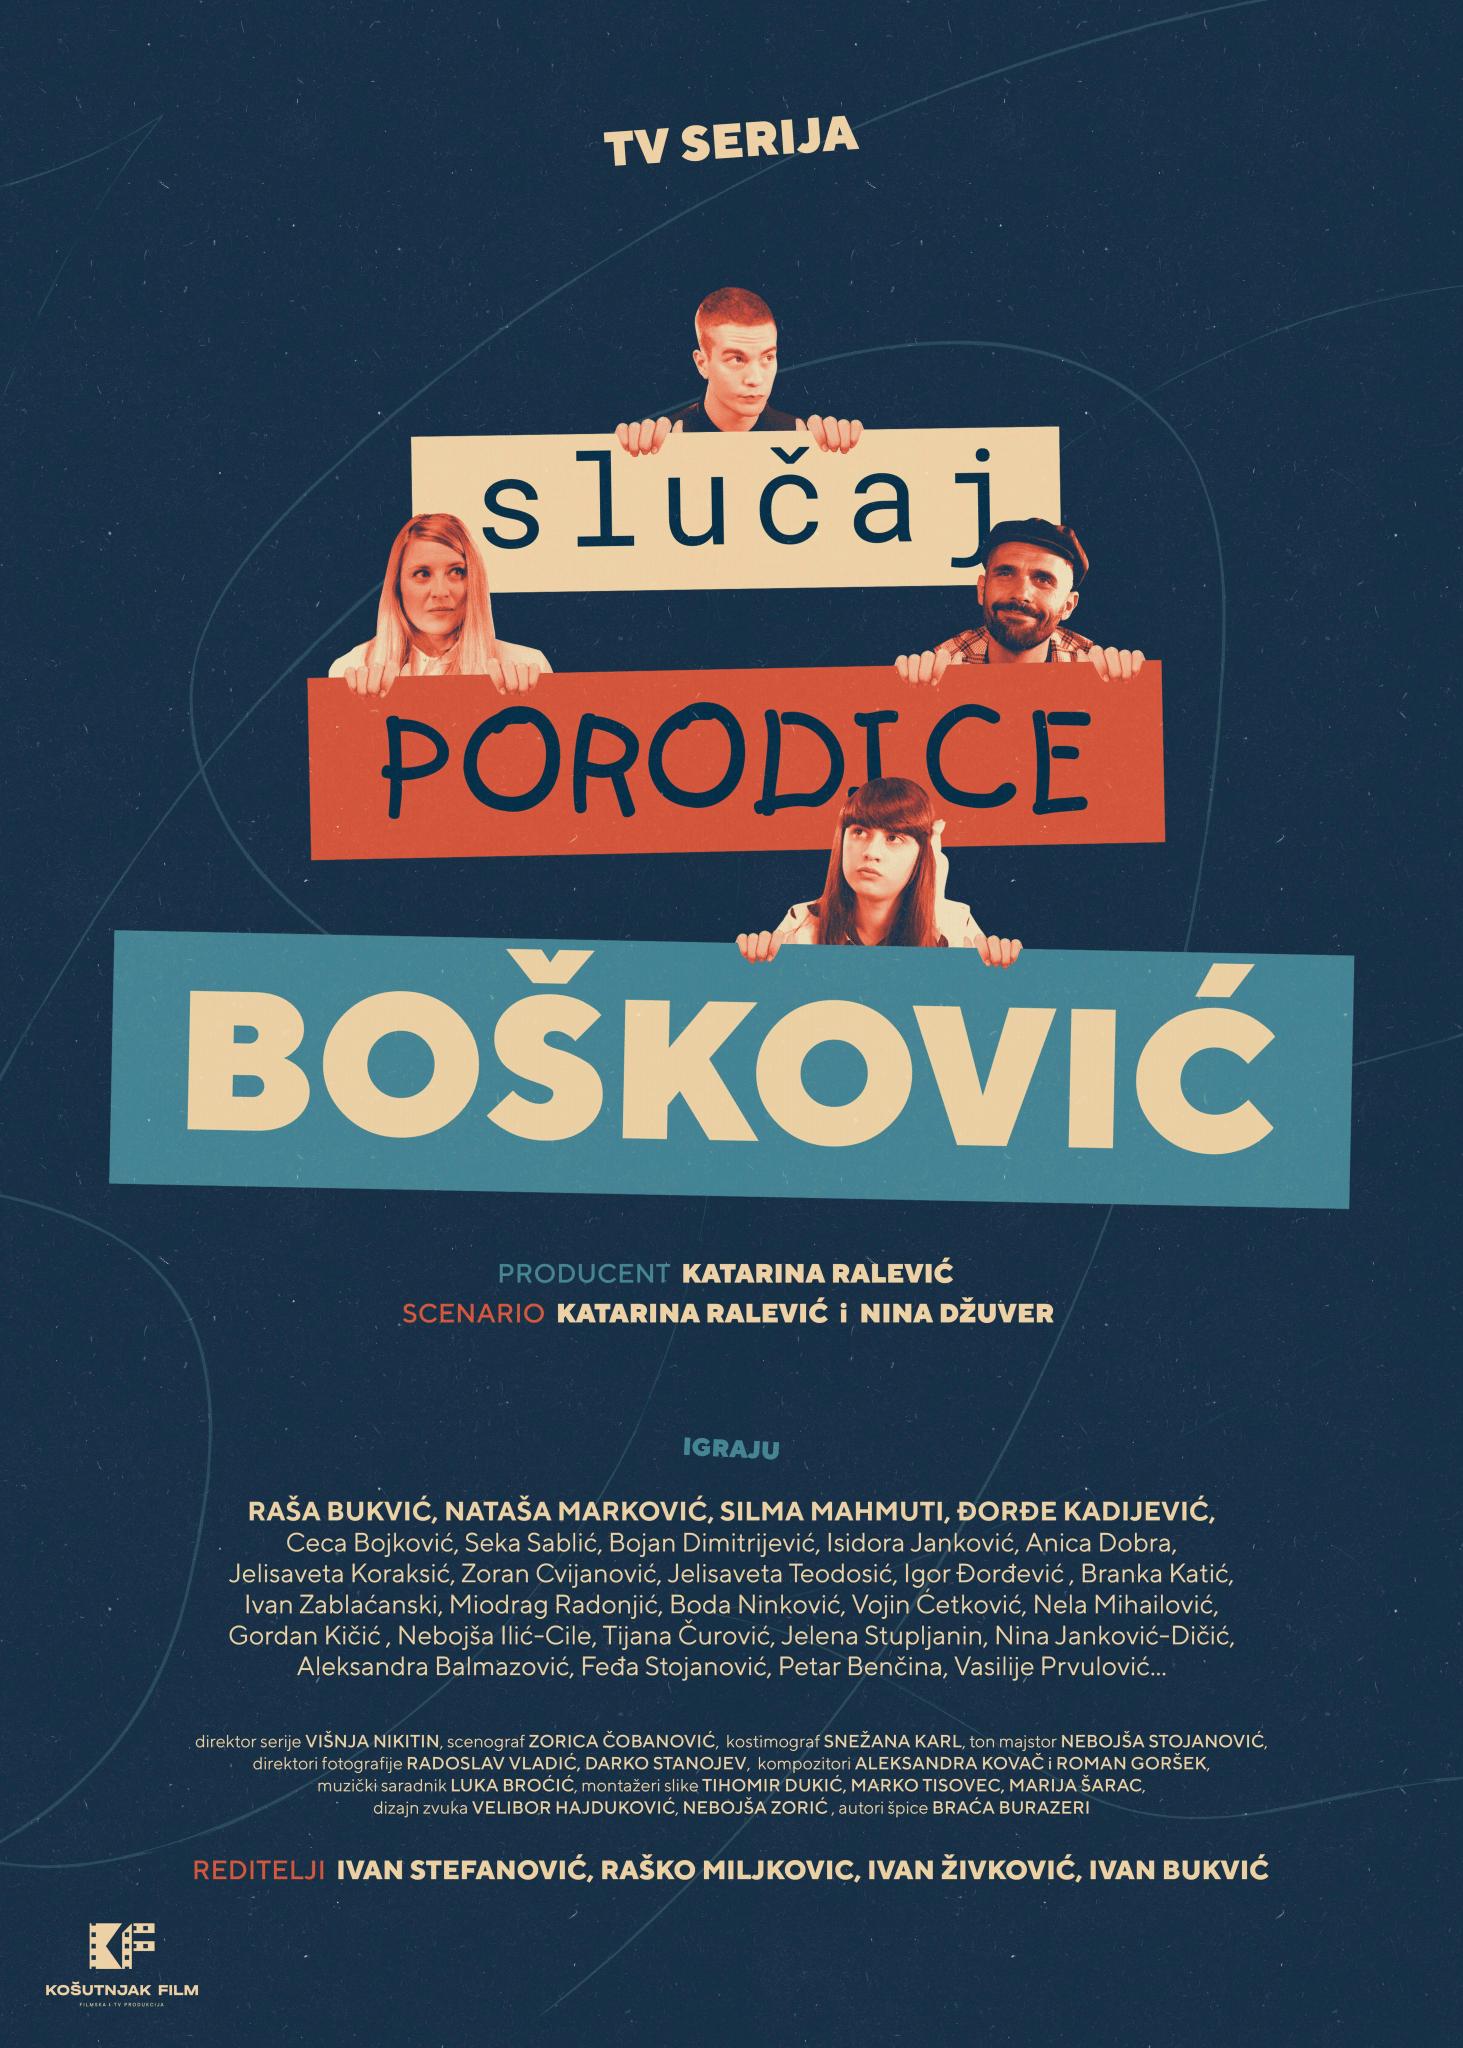 Slucaj porodice Boskovic (2020) постер